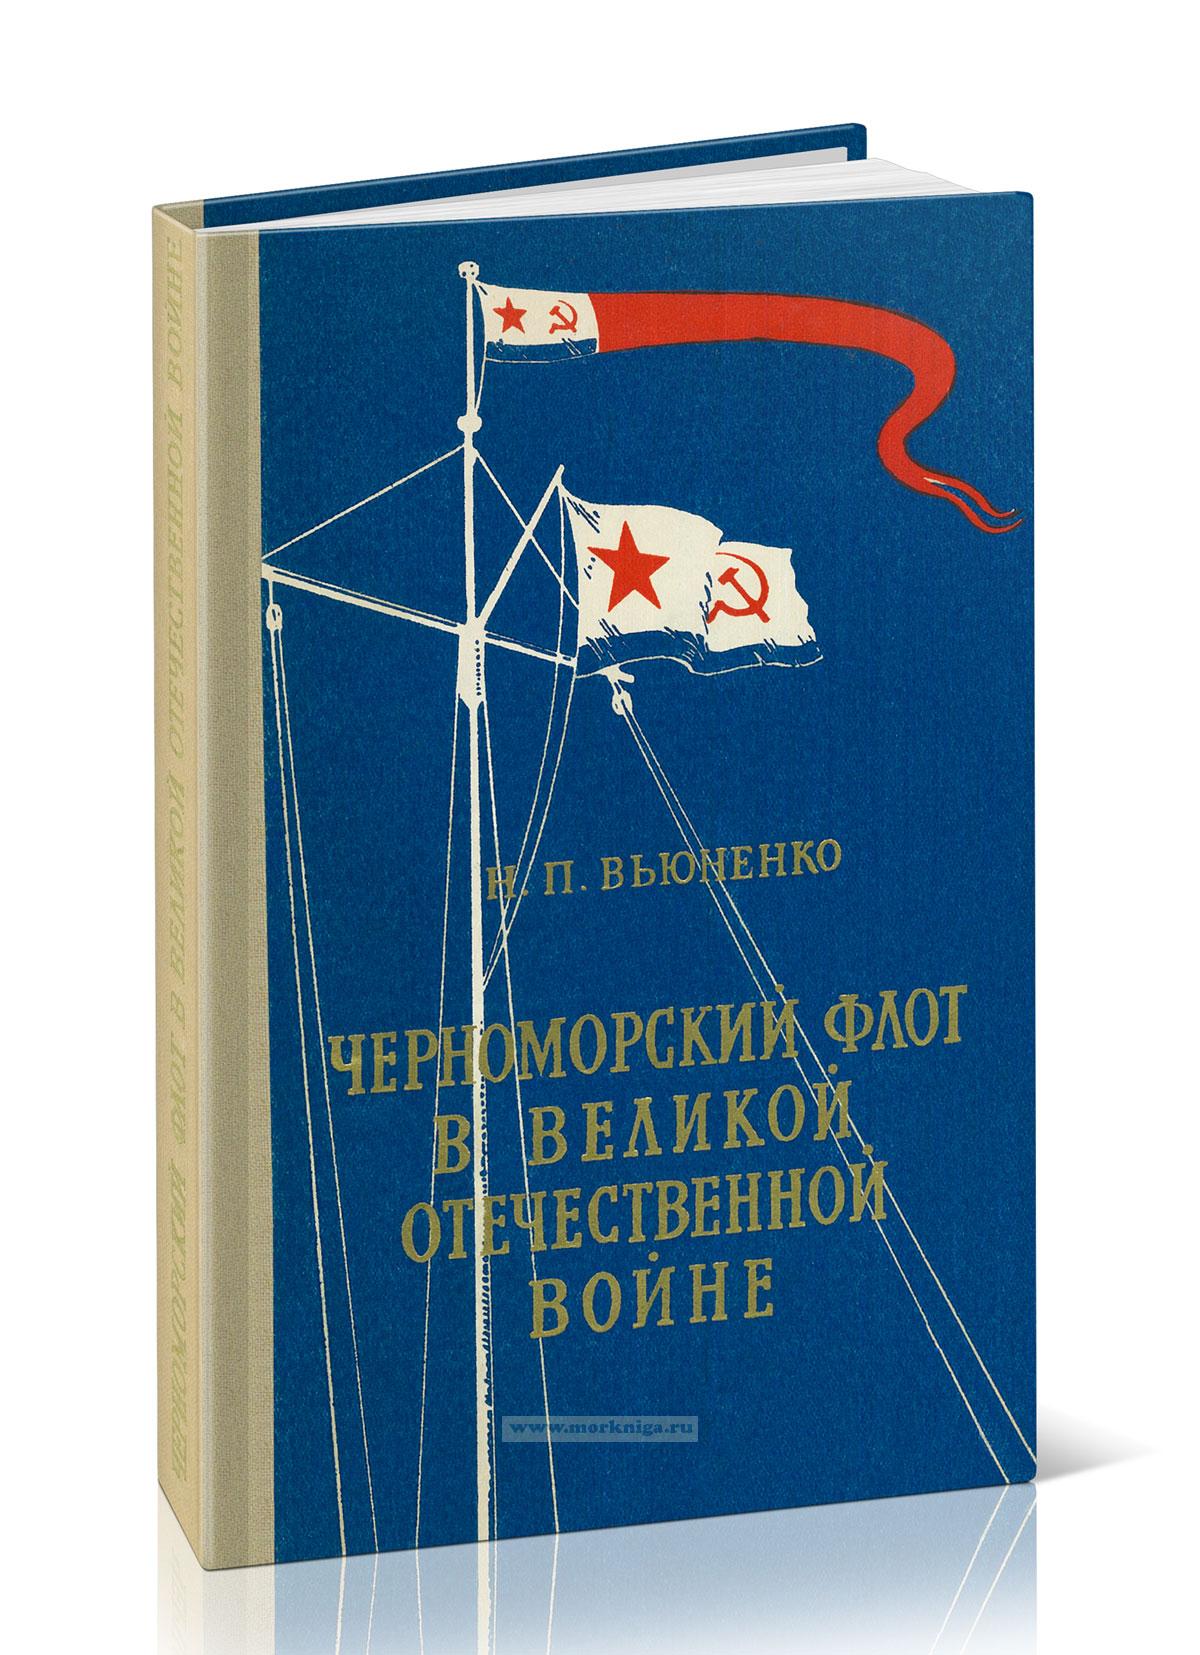 Черноморский флот в Великой Отечественной войне